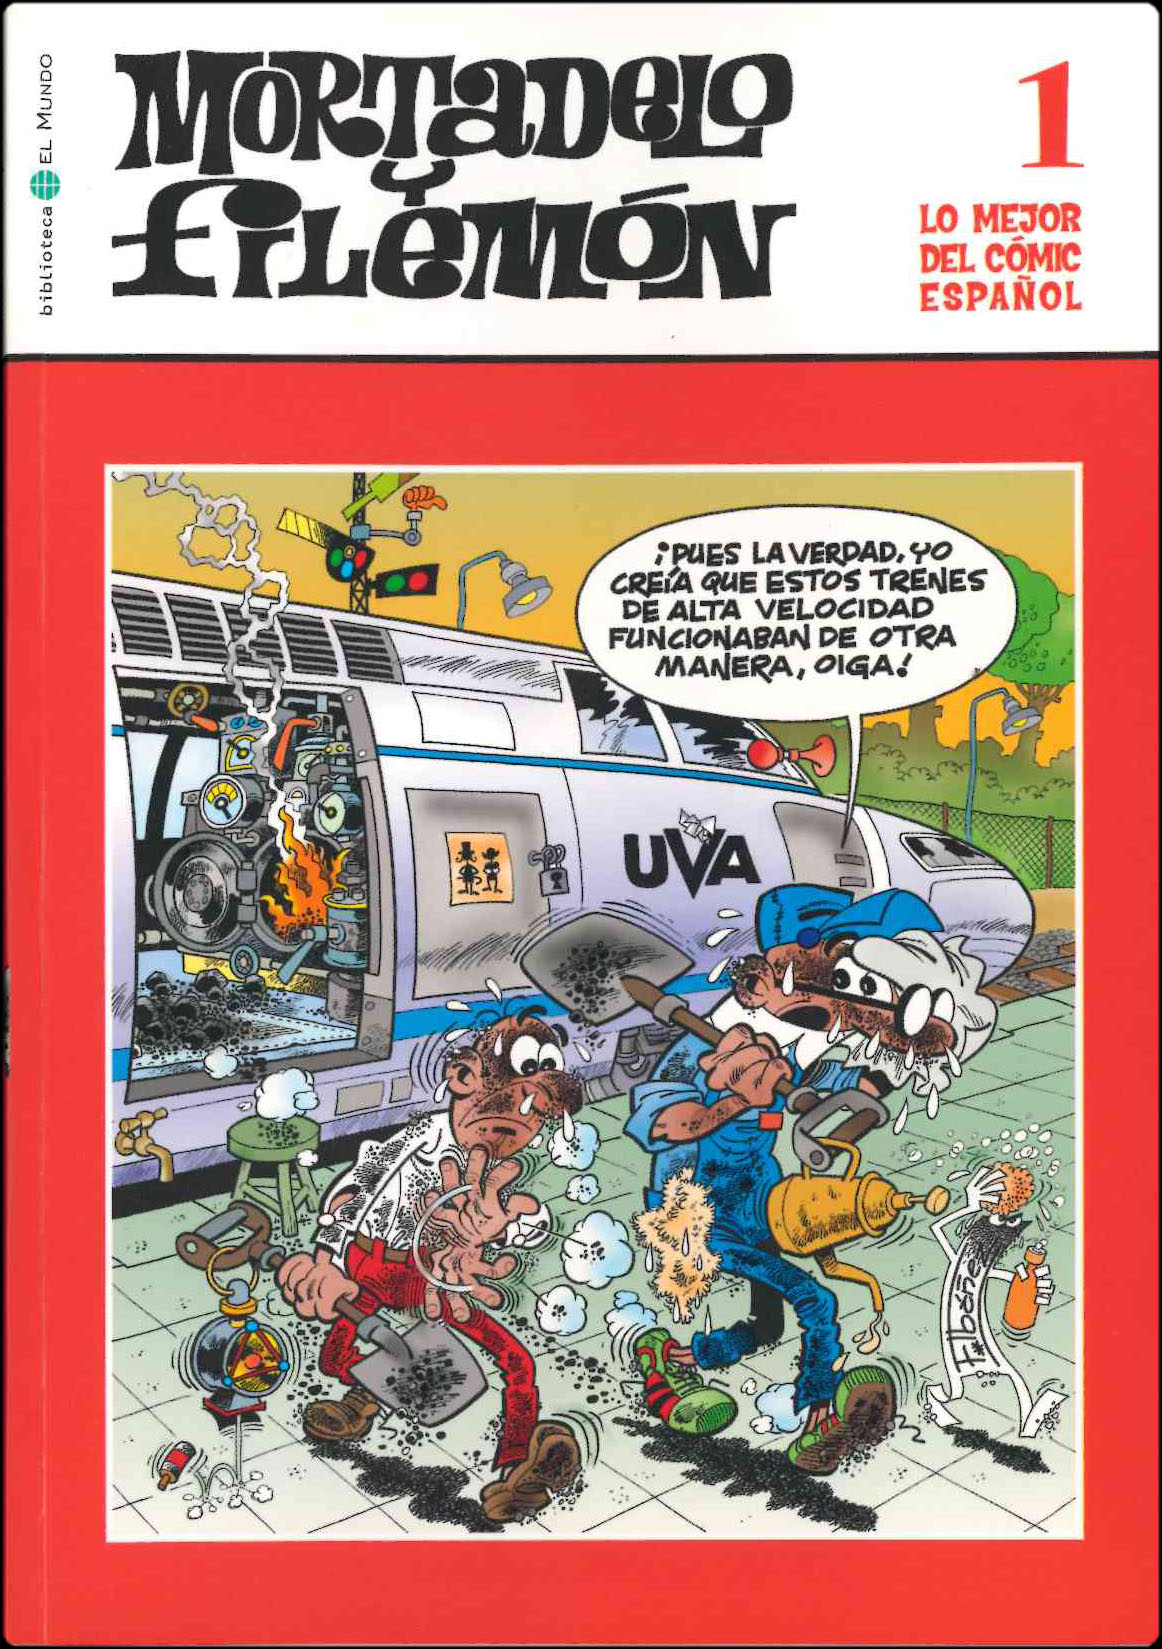 Lo mejor del Cómic Español. Grupo Zeta: El Mundo / Ediciones B 2006. Nº 1. Mortadelo y Filemón